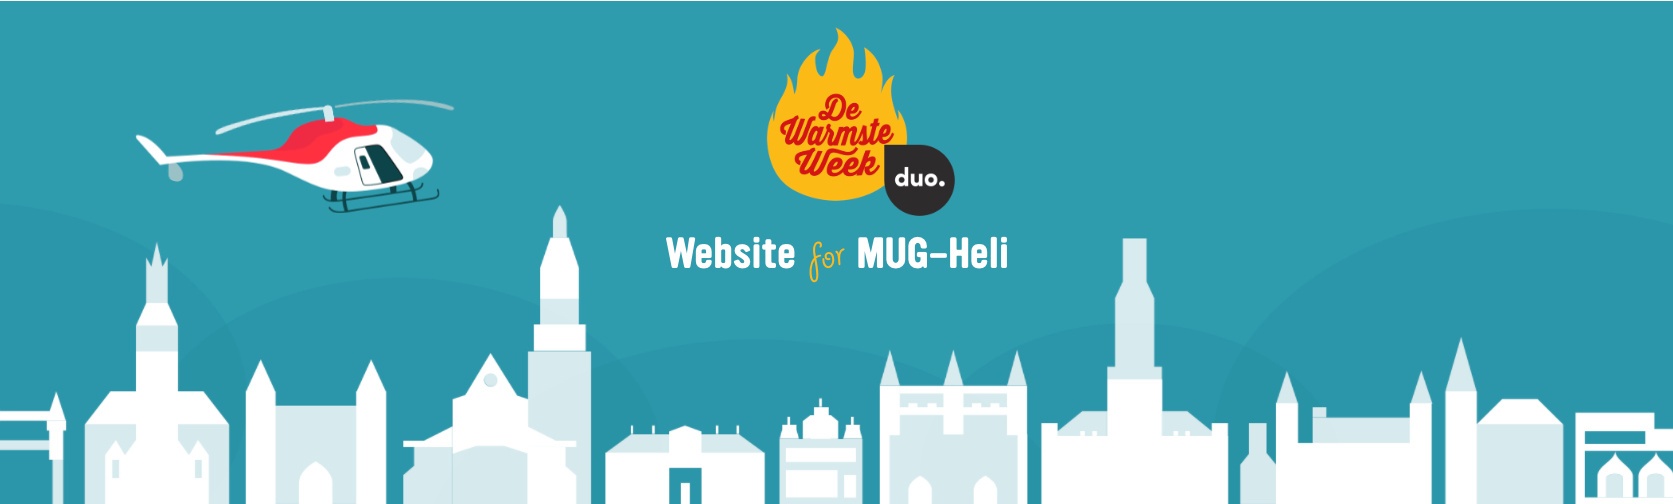 De Warmste Week - Studio Brussel - Website for Life - Duo